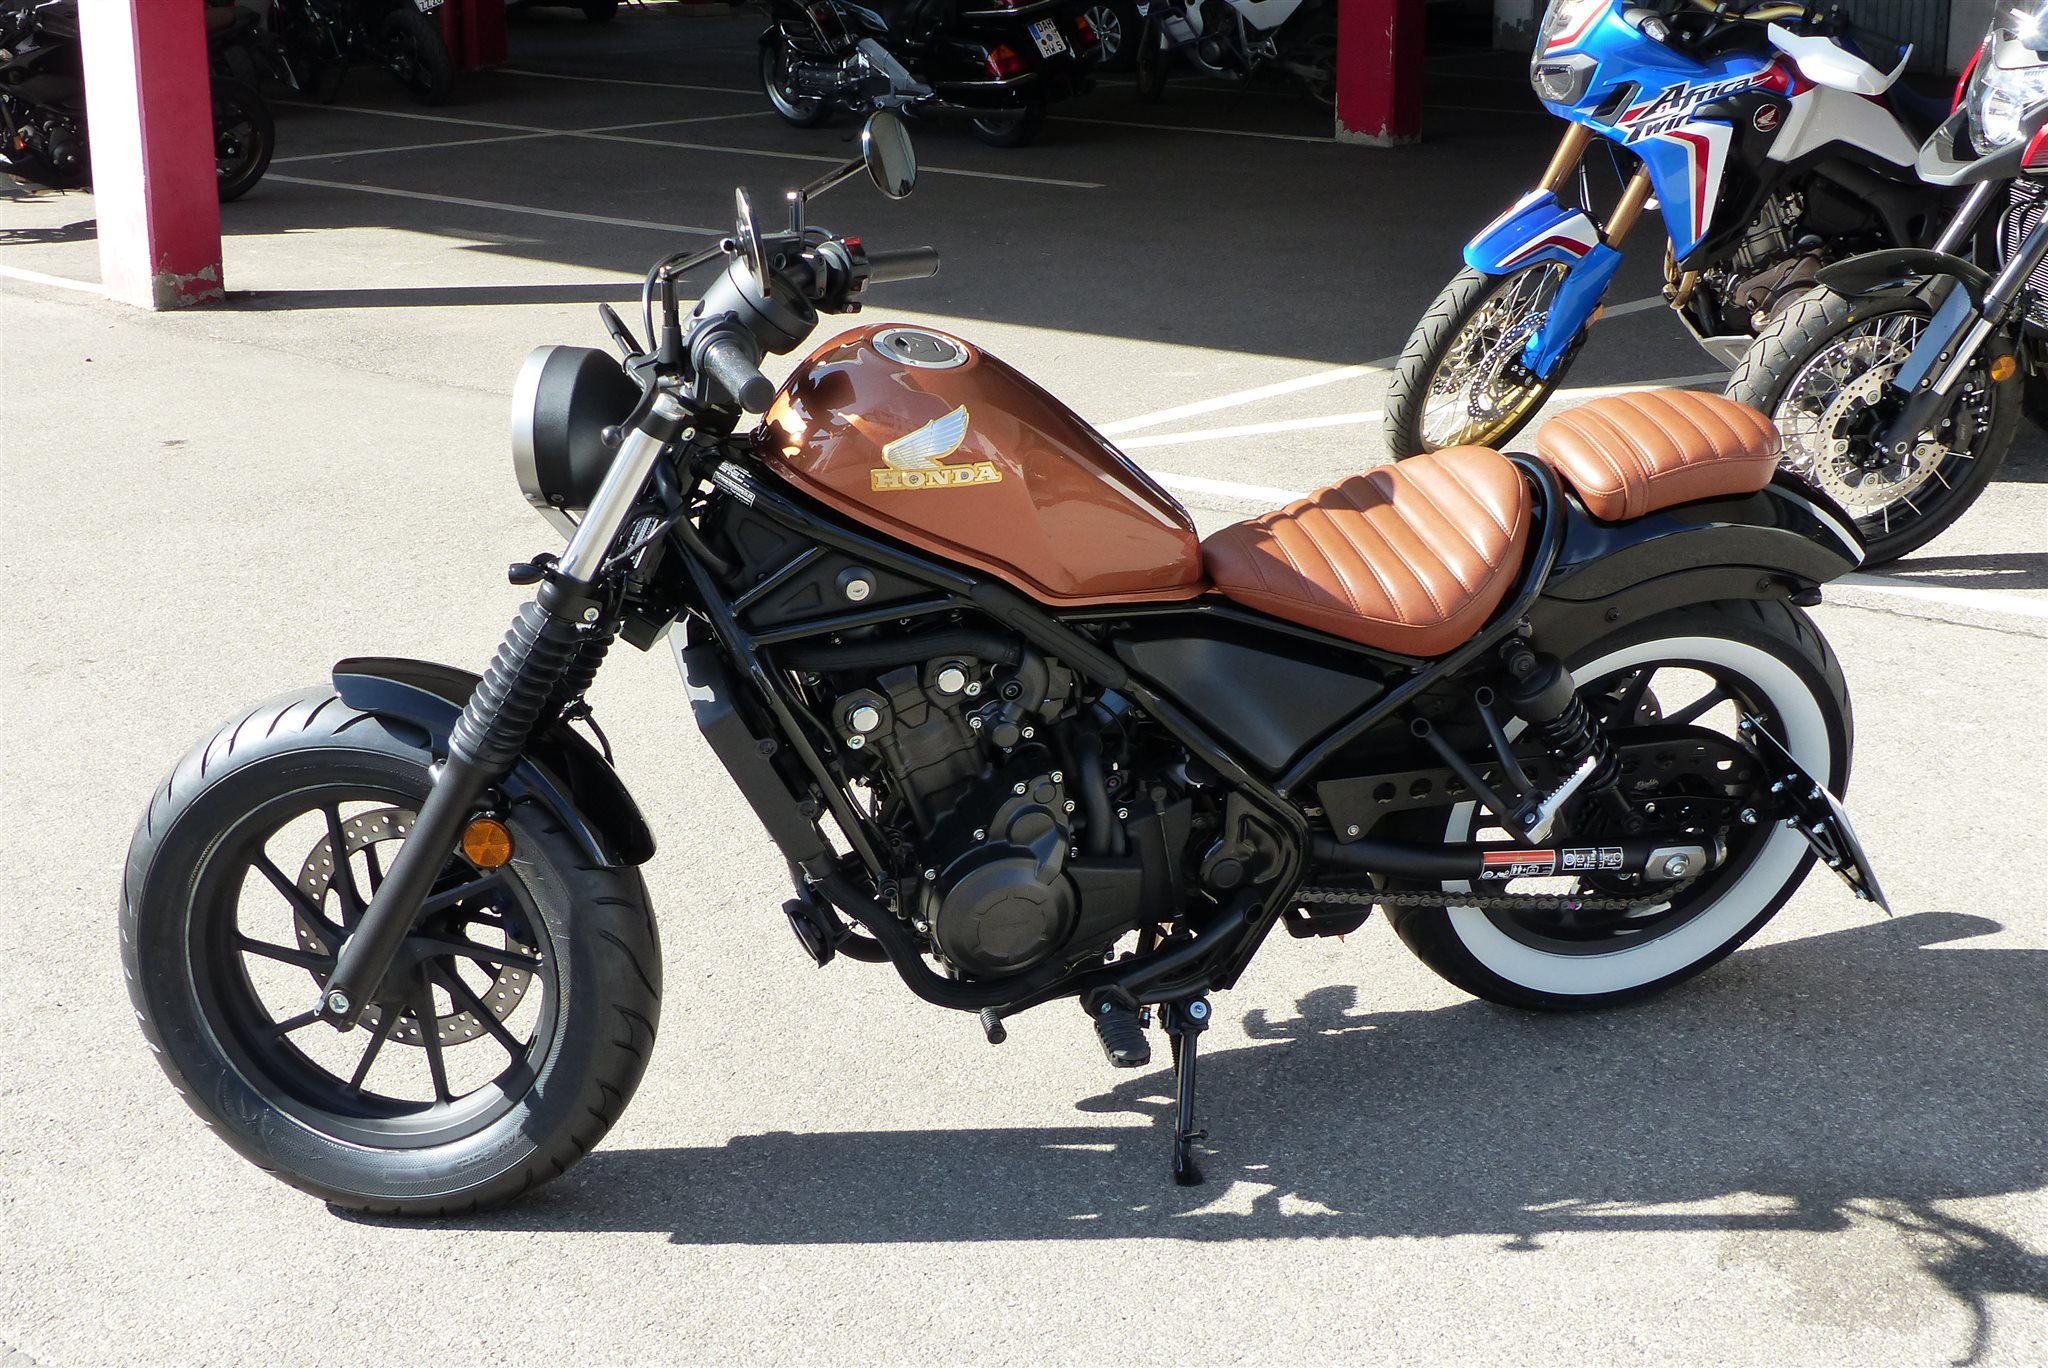 Details of the dealer's custom bike Honda CMX500 Rebel Motorrad